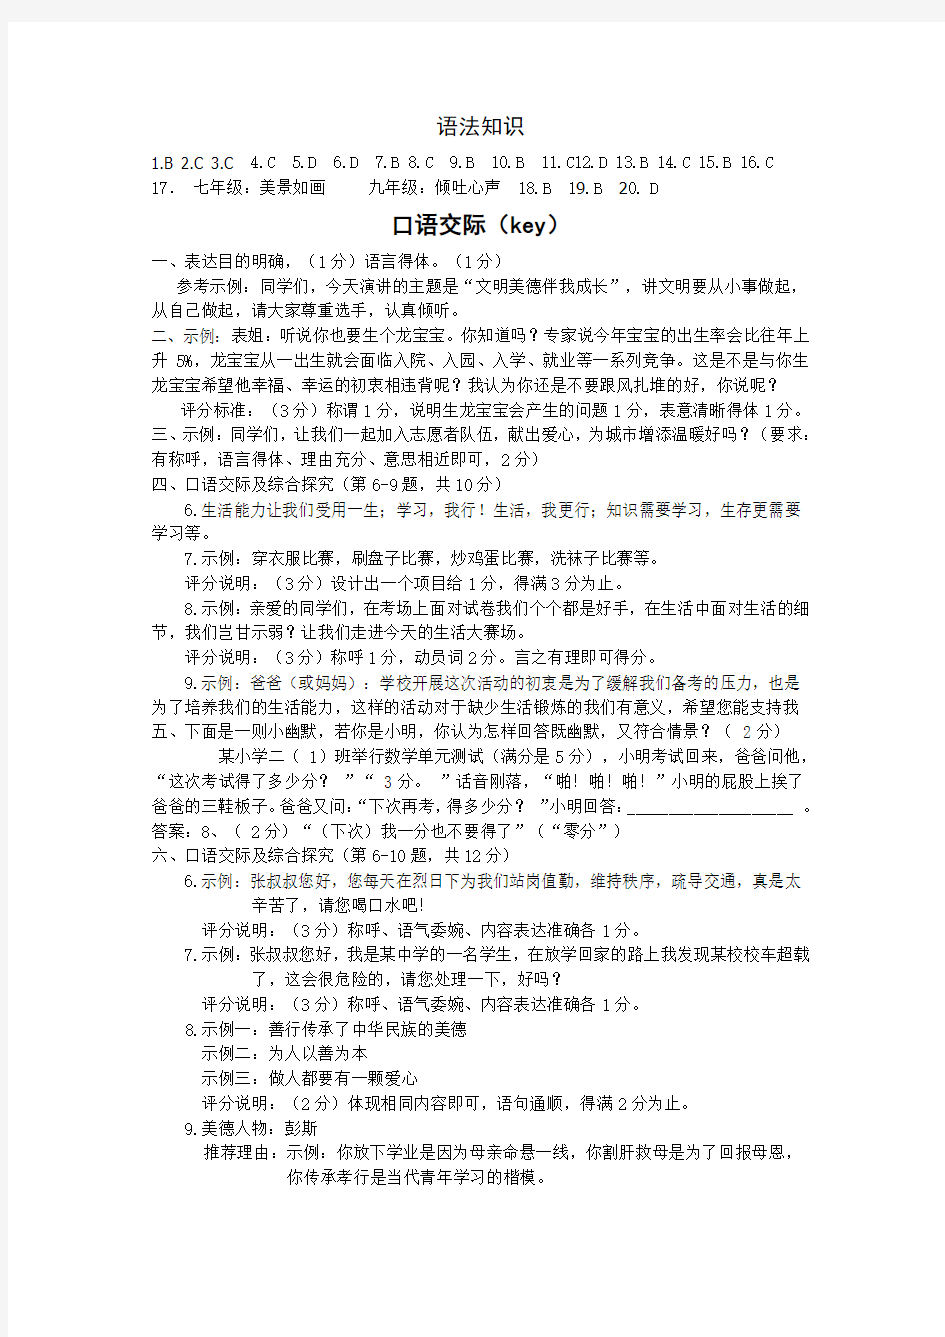 2013年启黄中学初二年级暑期语文作业参考答案